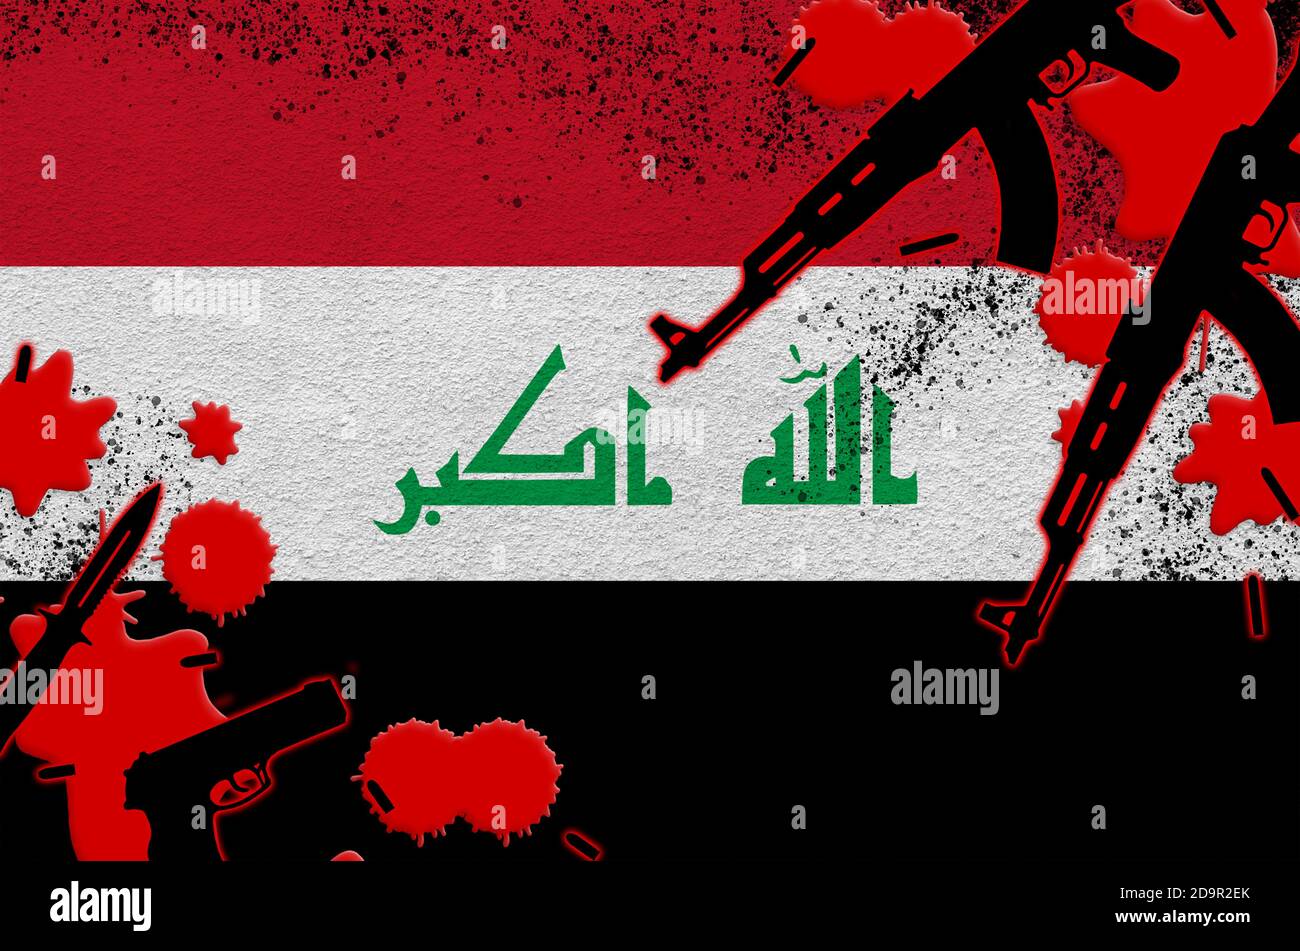 Irakische Flagge und Waffen in rotem Blut. Konzept für Terrorangriffe und  militärische Operationen. Waffenhandel Stockfotografie - Alamy